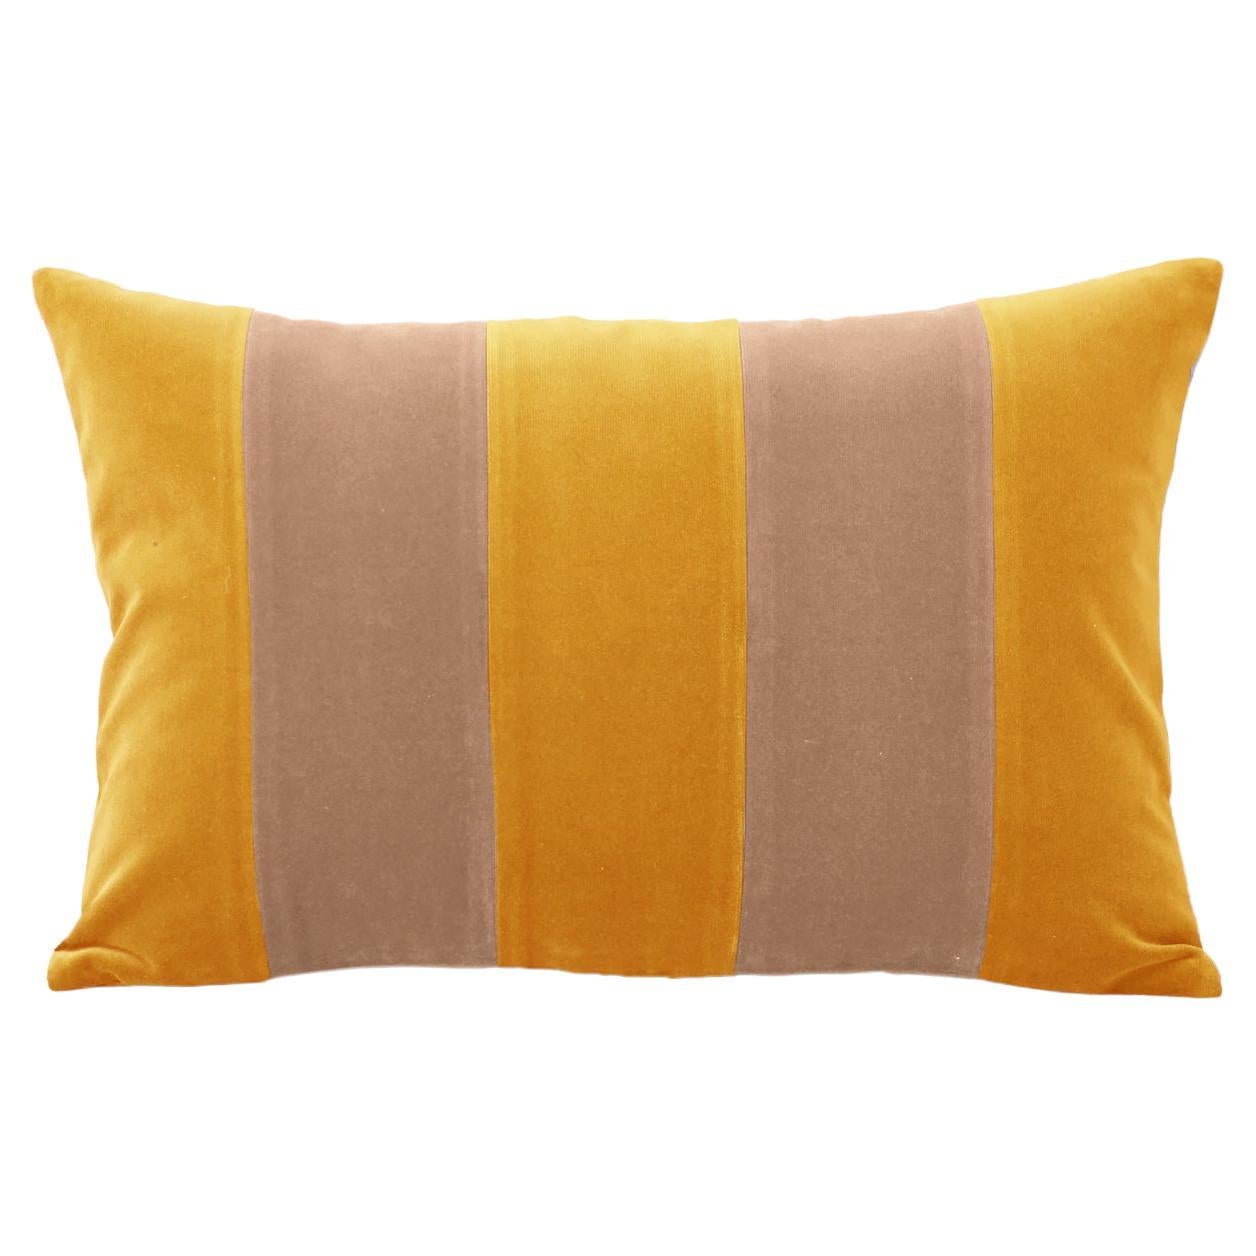 GEMMA II Mustard & Cappuccino Velvet Deluxe Handmade Decorative Pillow For Sale